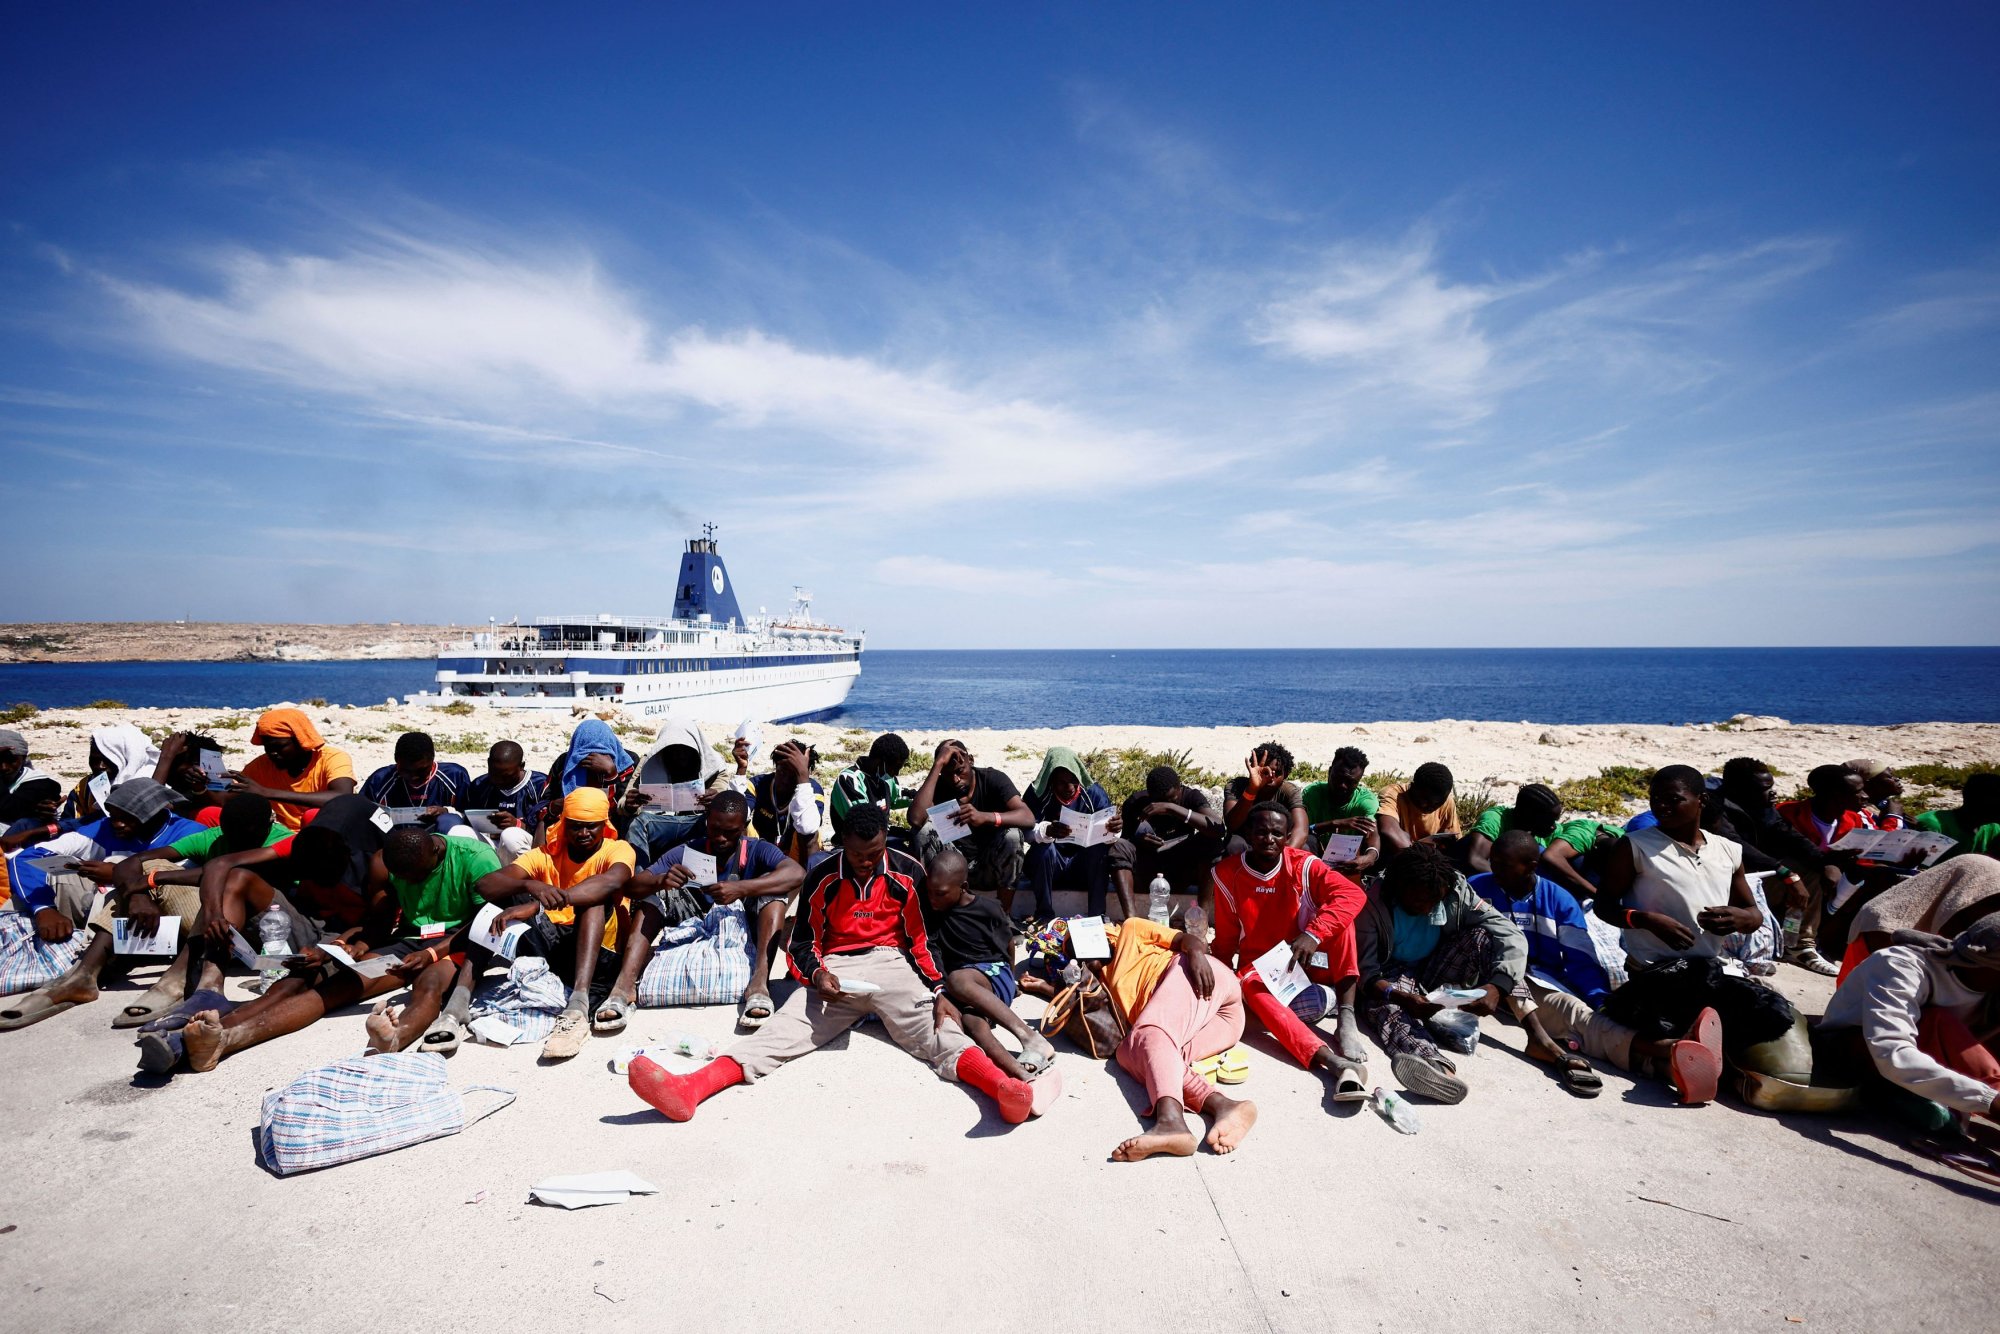 Λαμπετούζα: Ρεκόρ αφίξεων μεταναστών με 6.800 ατόμα μέσα σε 24 ώρες